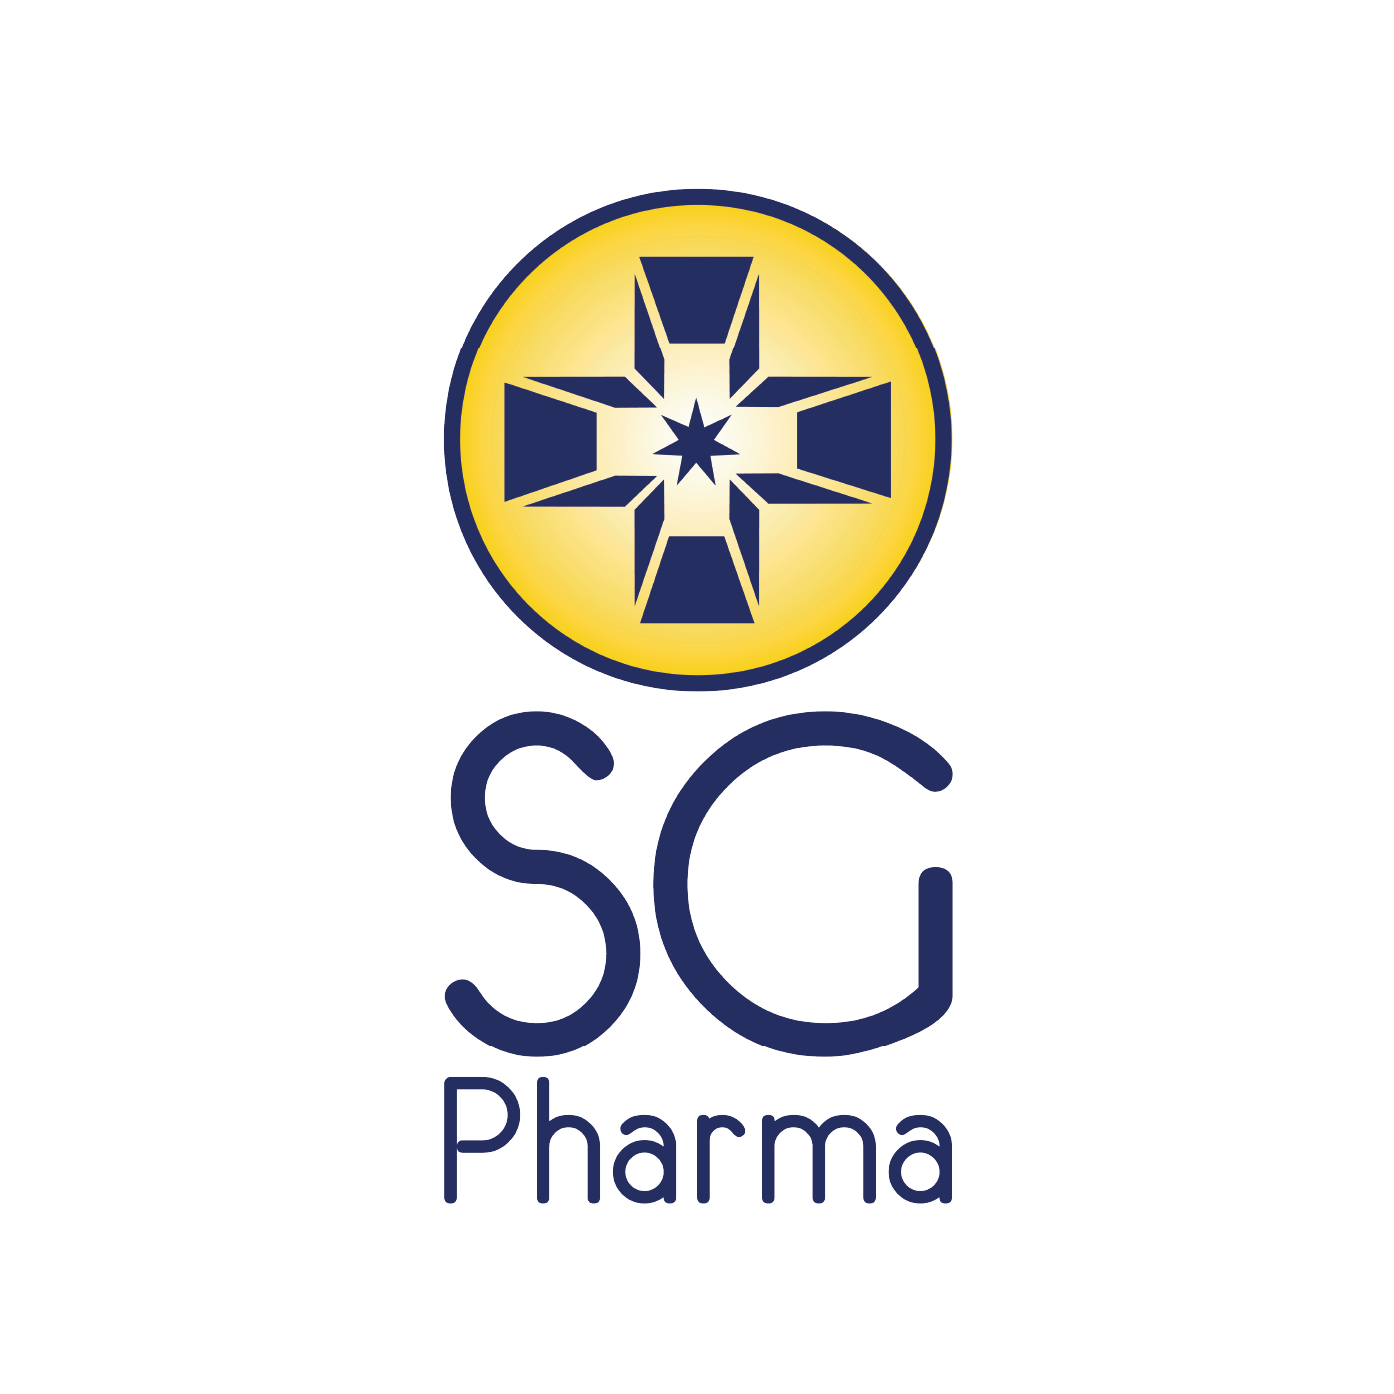 SG Pharma